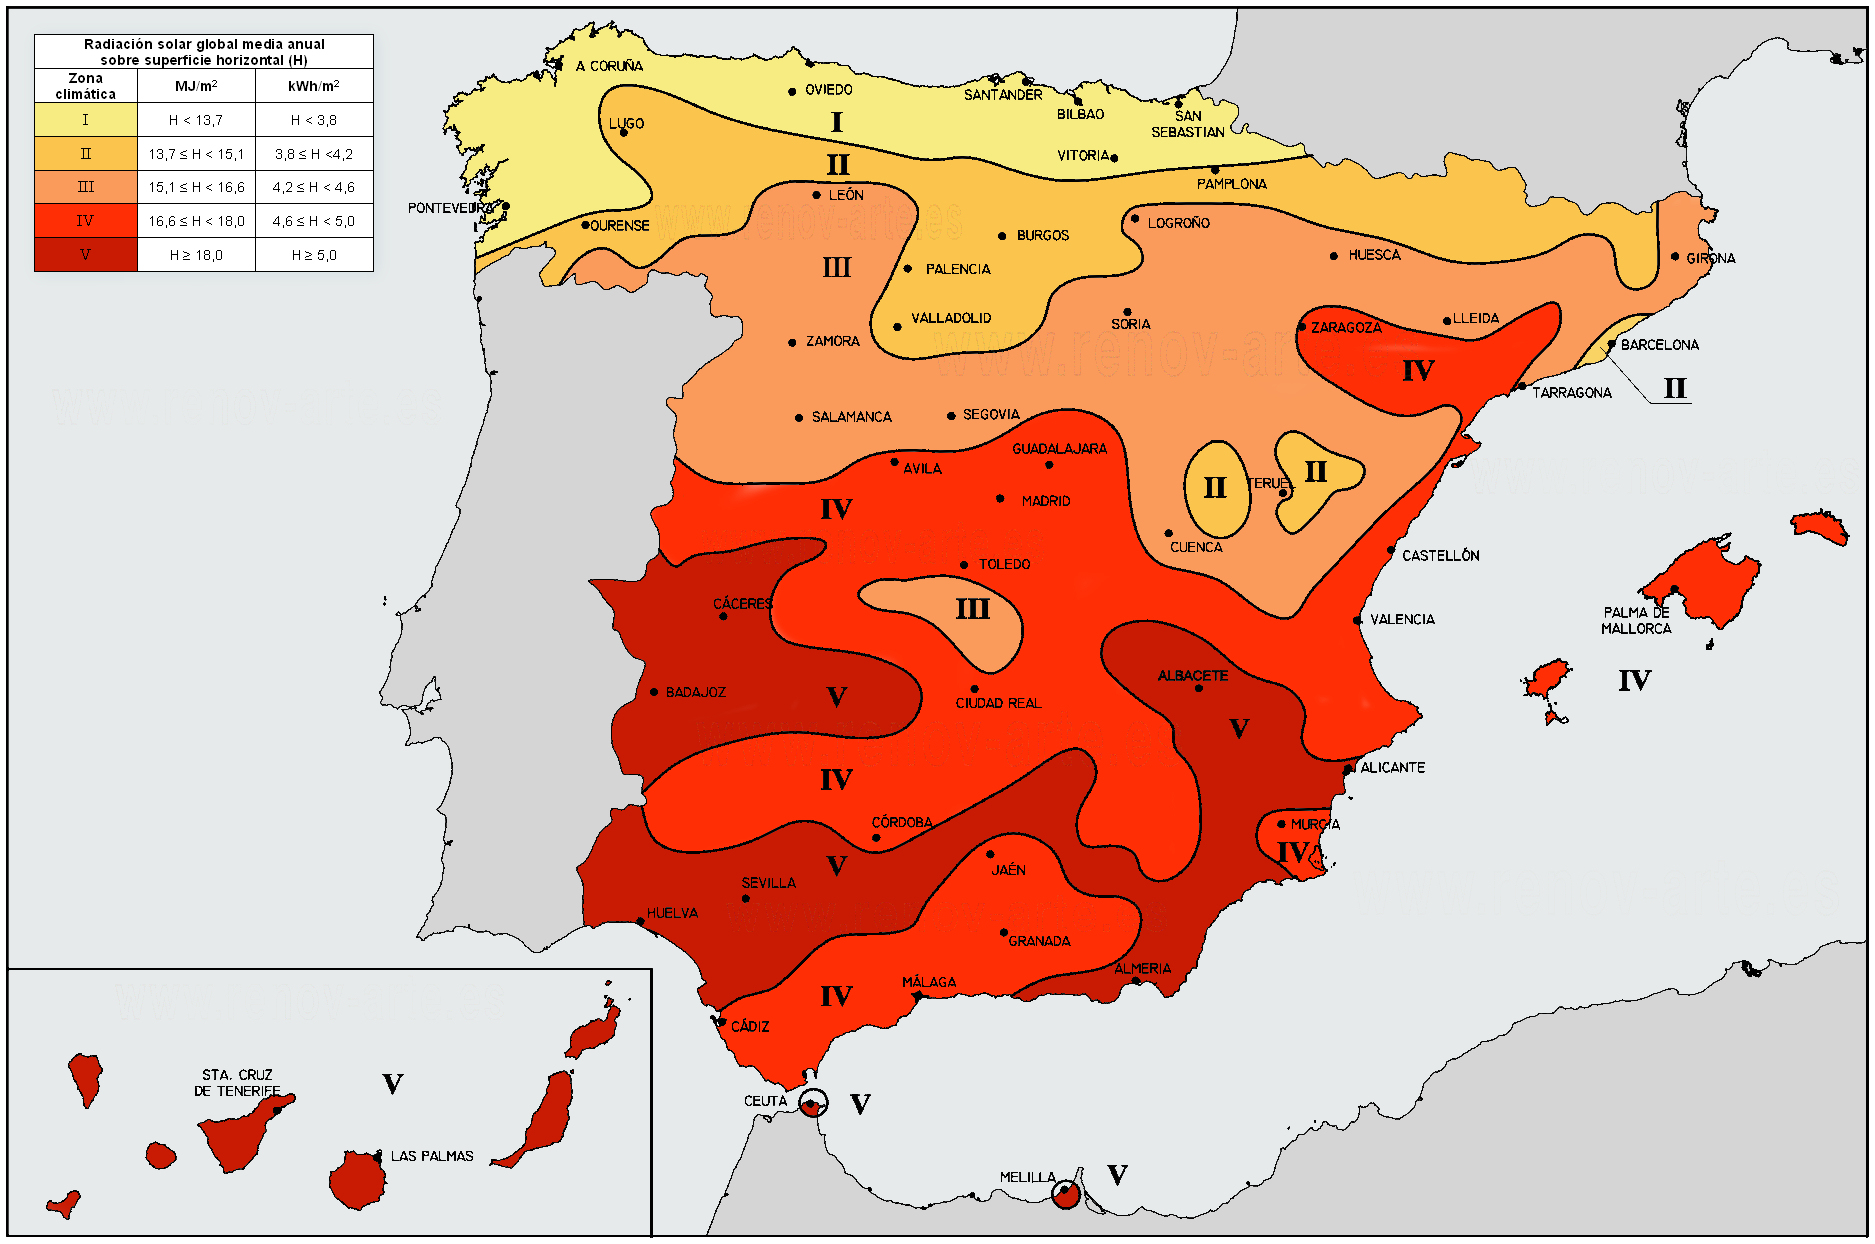 Irradiación media diaria en España según zonas geográficas